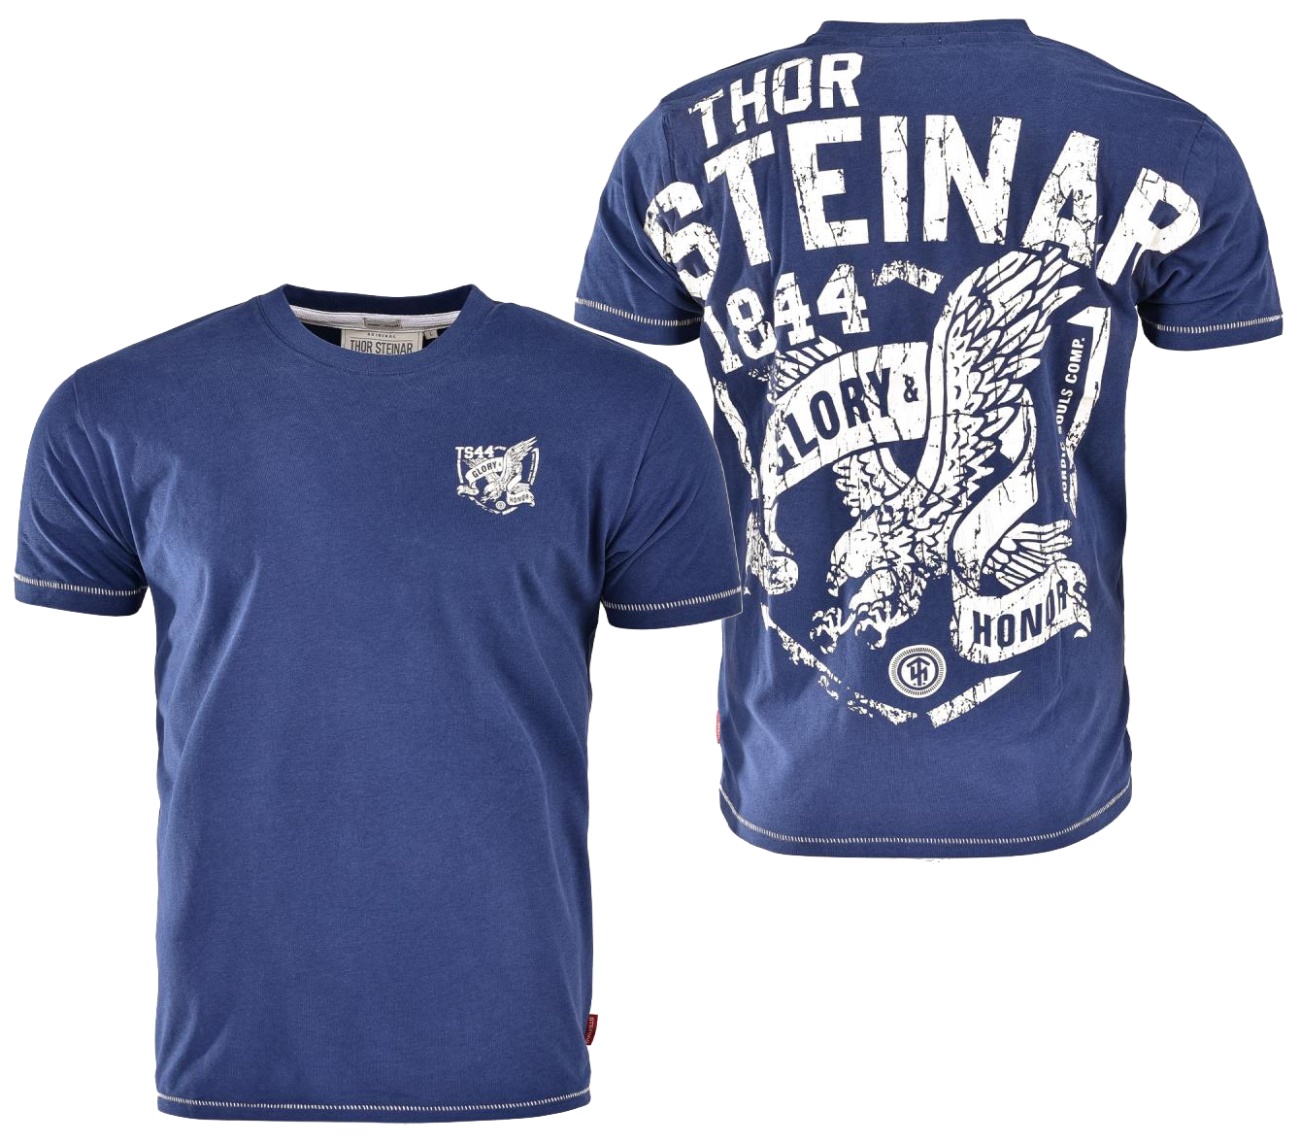 Thor Steinar T-Shirt Honor - Thor Steinar T-Shirts - Details - Thorshop ...